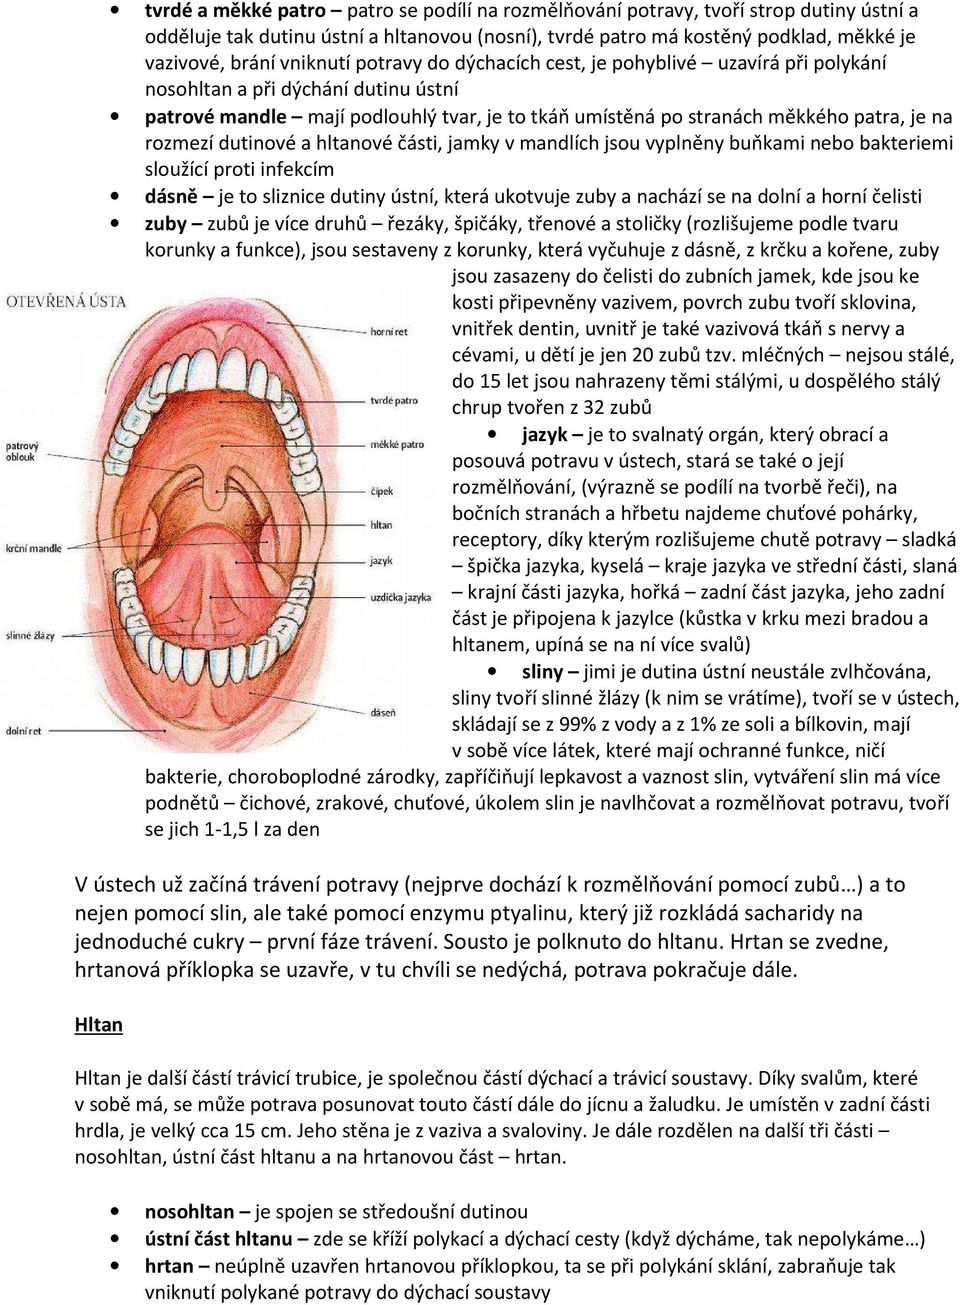 rozmezí dutinové a hltanové části, jamky v mandlích jsou vyplněny buňkami nebo bakteriemi sloužící proti infekcím dásně je to sliznice dutiny ústní, která ukotvuje zuby a nachází se na dolní a horní